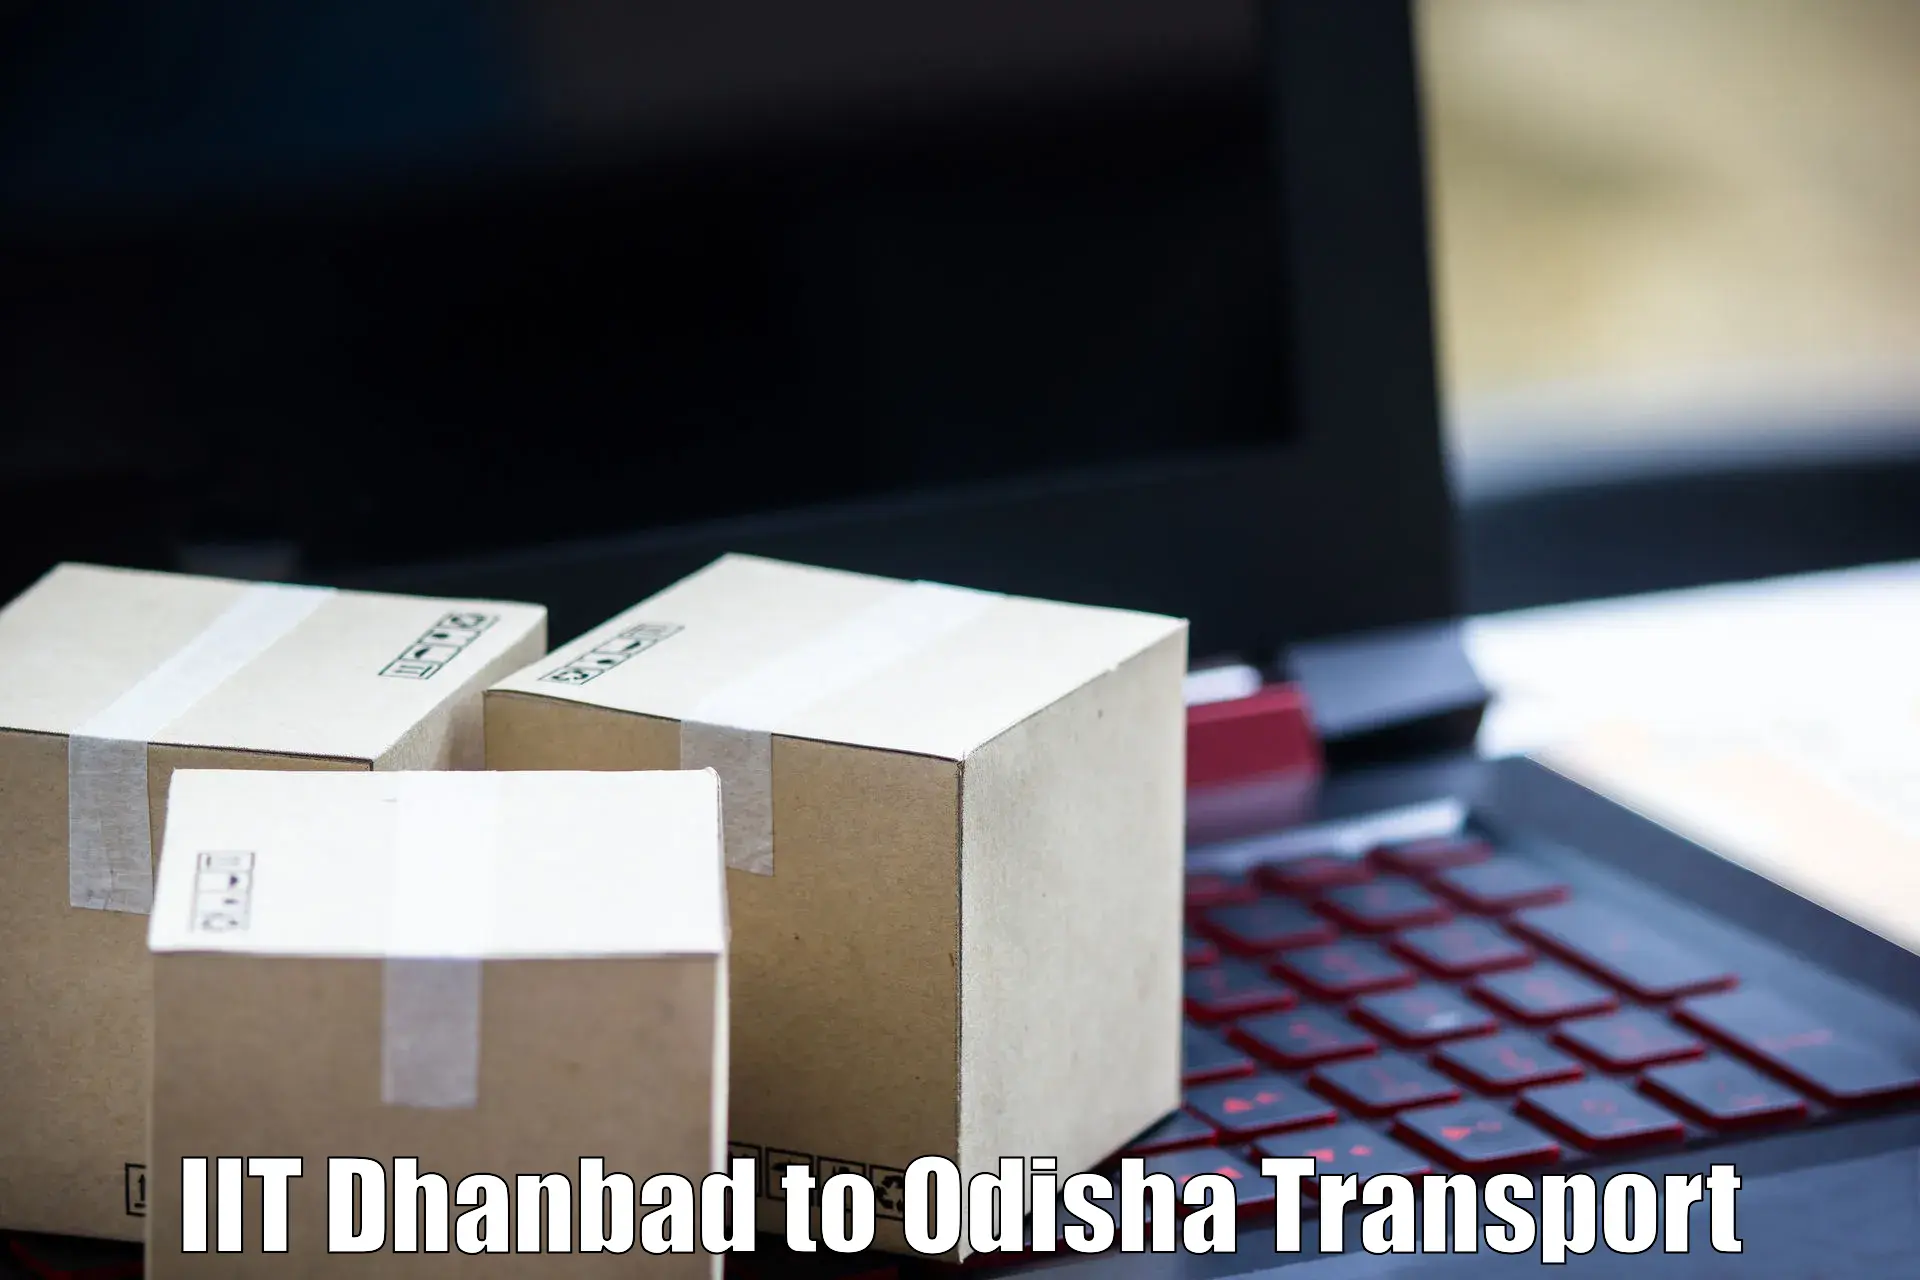 Nearest transport service IIT Dhanbad to Birmitrapur